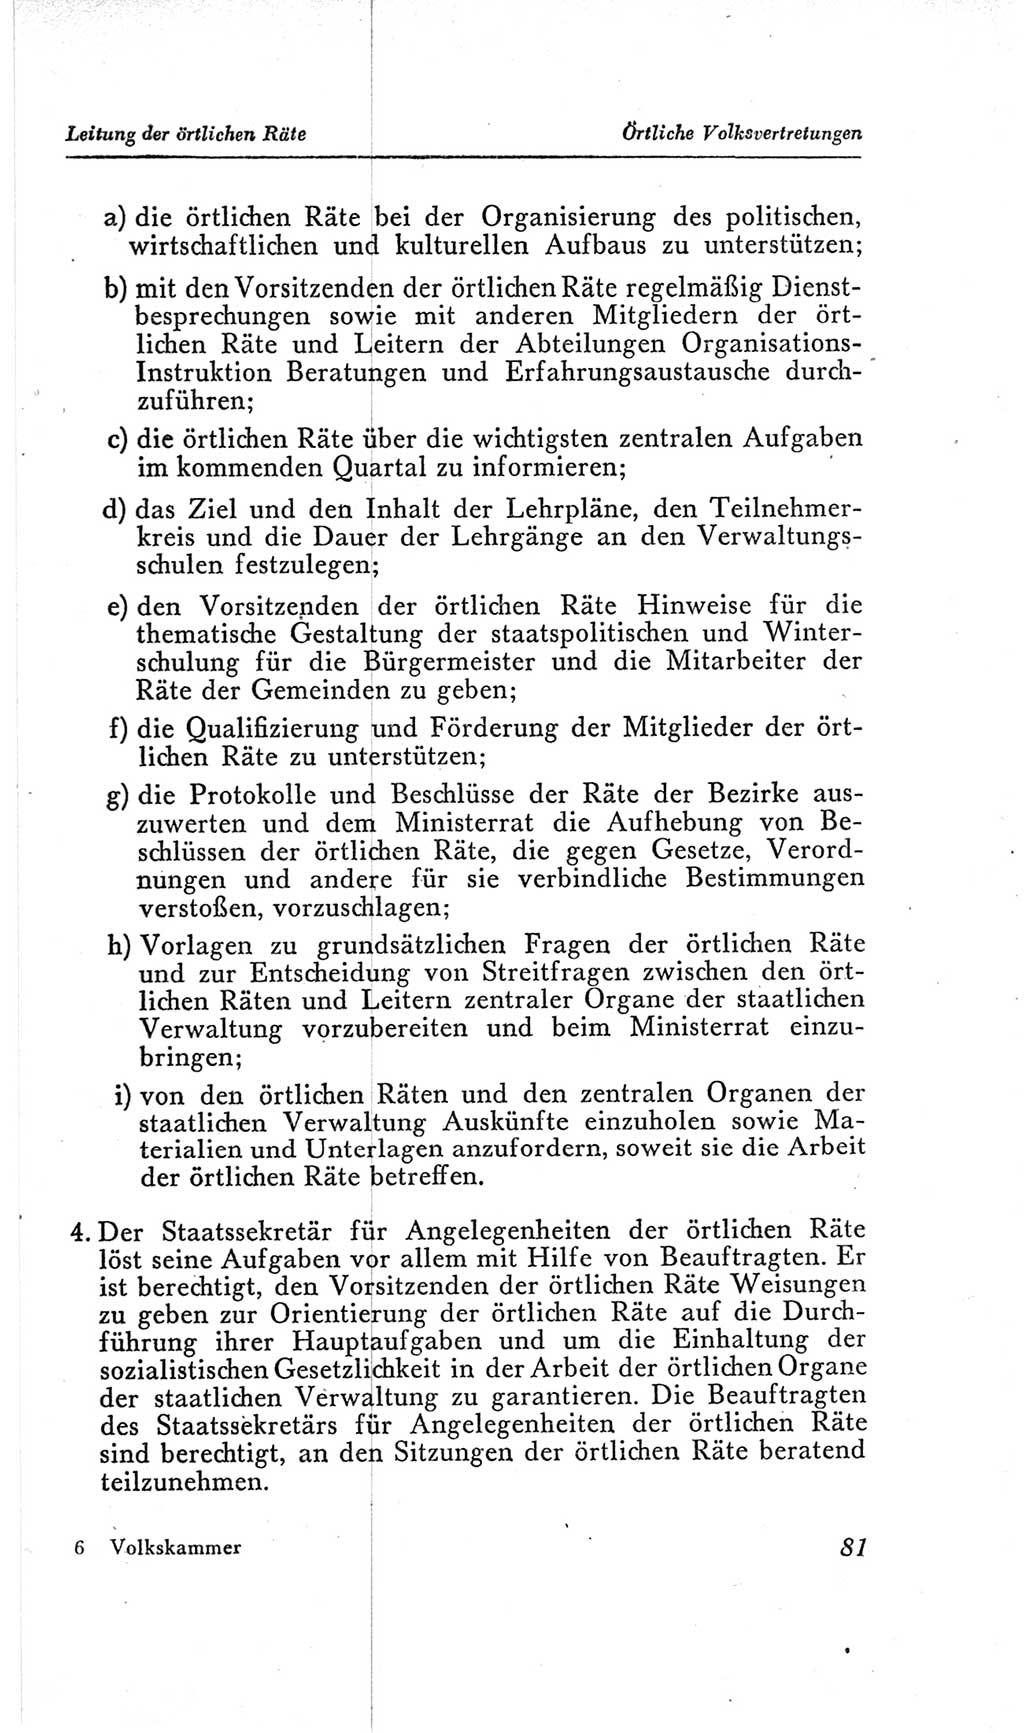 Handbuch der Volkskammer (VK) der Deutschen Demokratischen Republik (DDR), 2. Wahlperiode 1954-1958, Seite 81 (Hdb. VK. DDR, 2. WP. 1954-1958, S. 81)